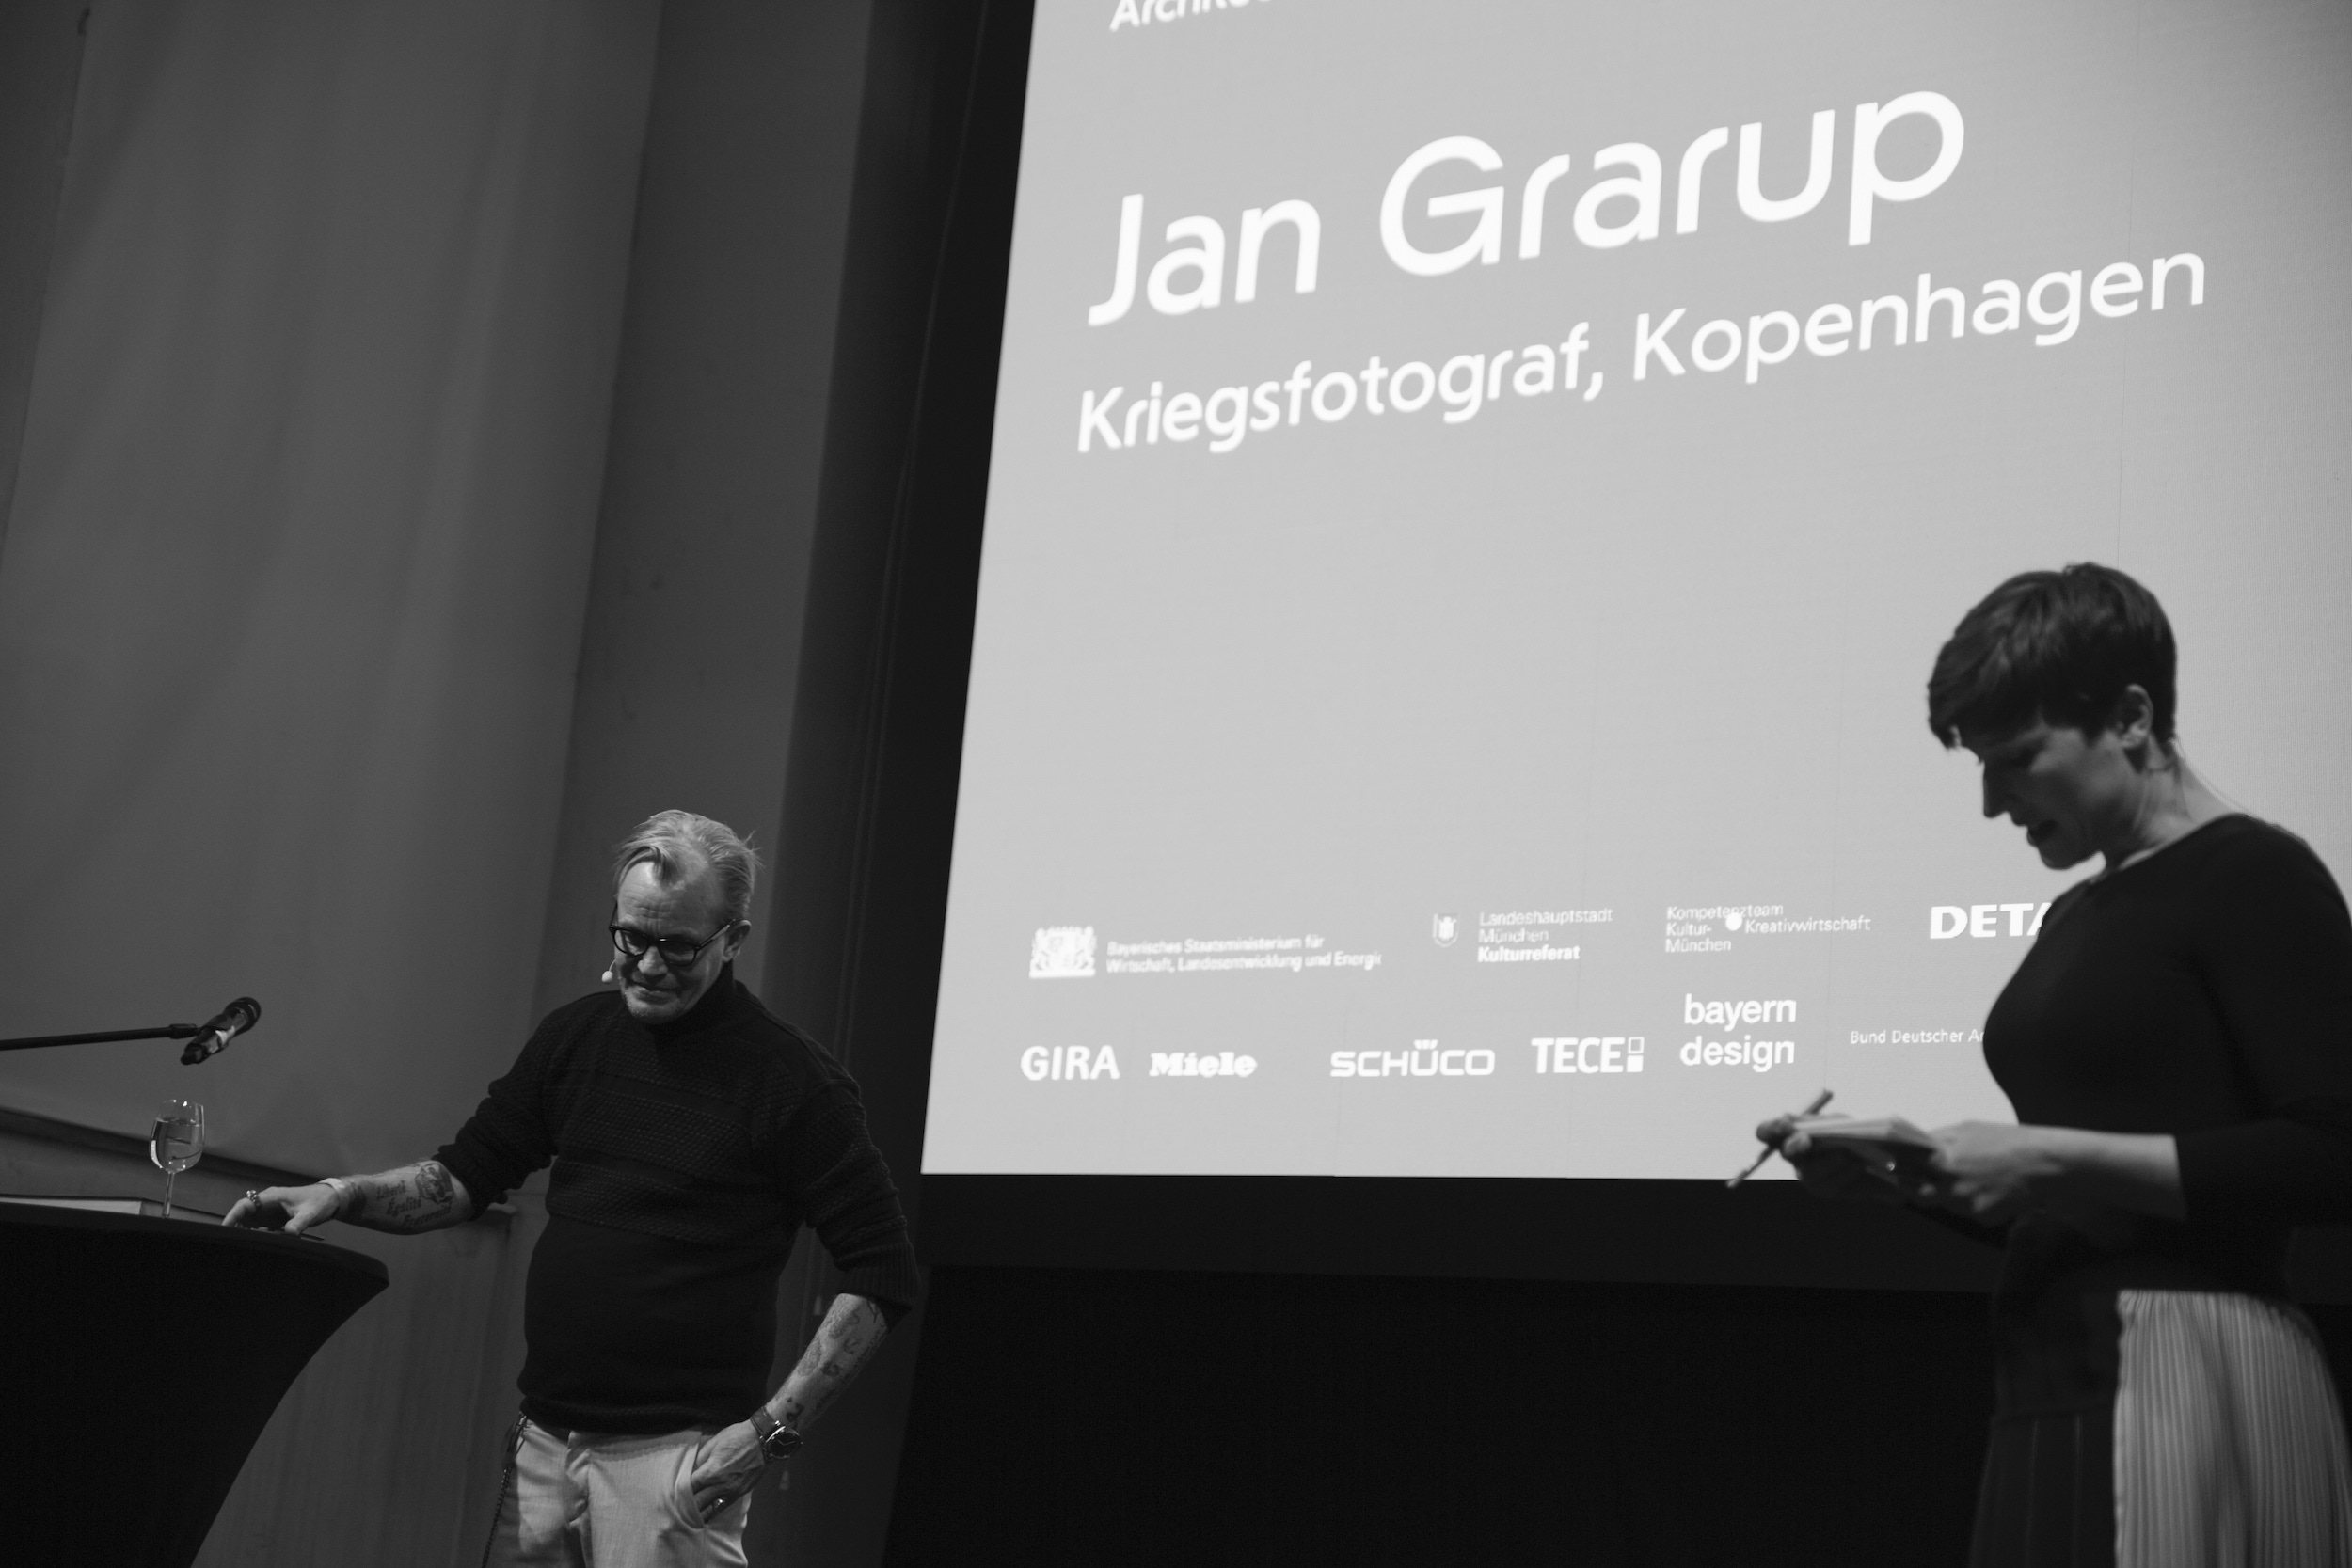 Jan Garup, Architecture Matters Conference 2019 in the Alten Akademie Munich